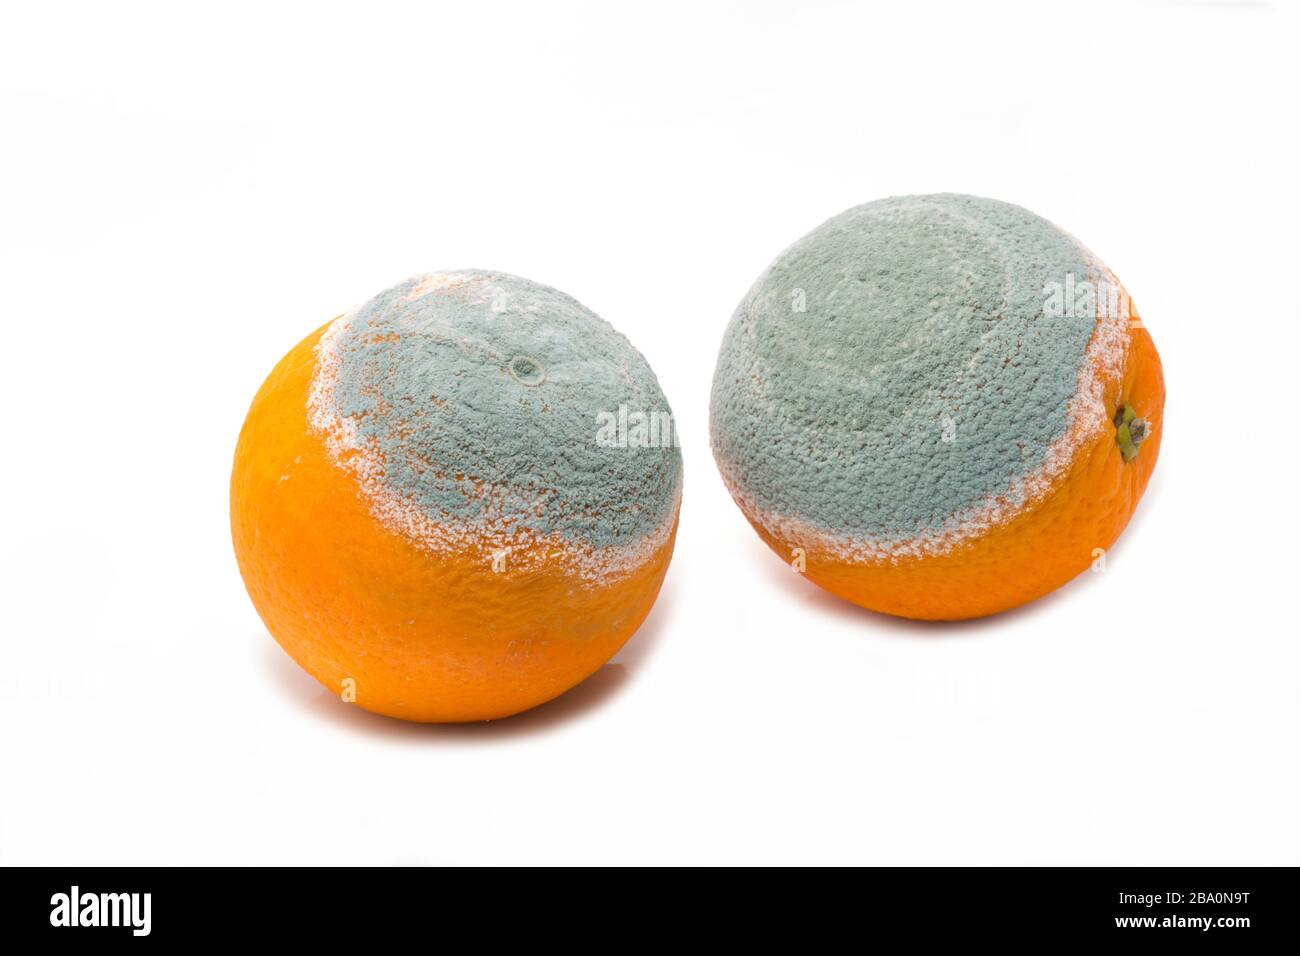 Zwei schimmelige Orangen, die verrottet sind. Weißer Hintergrund. England GB Stockfoto